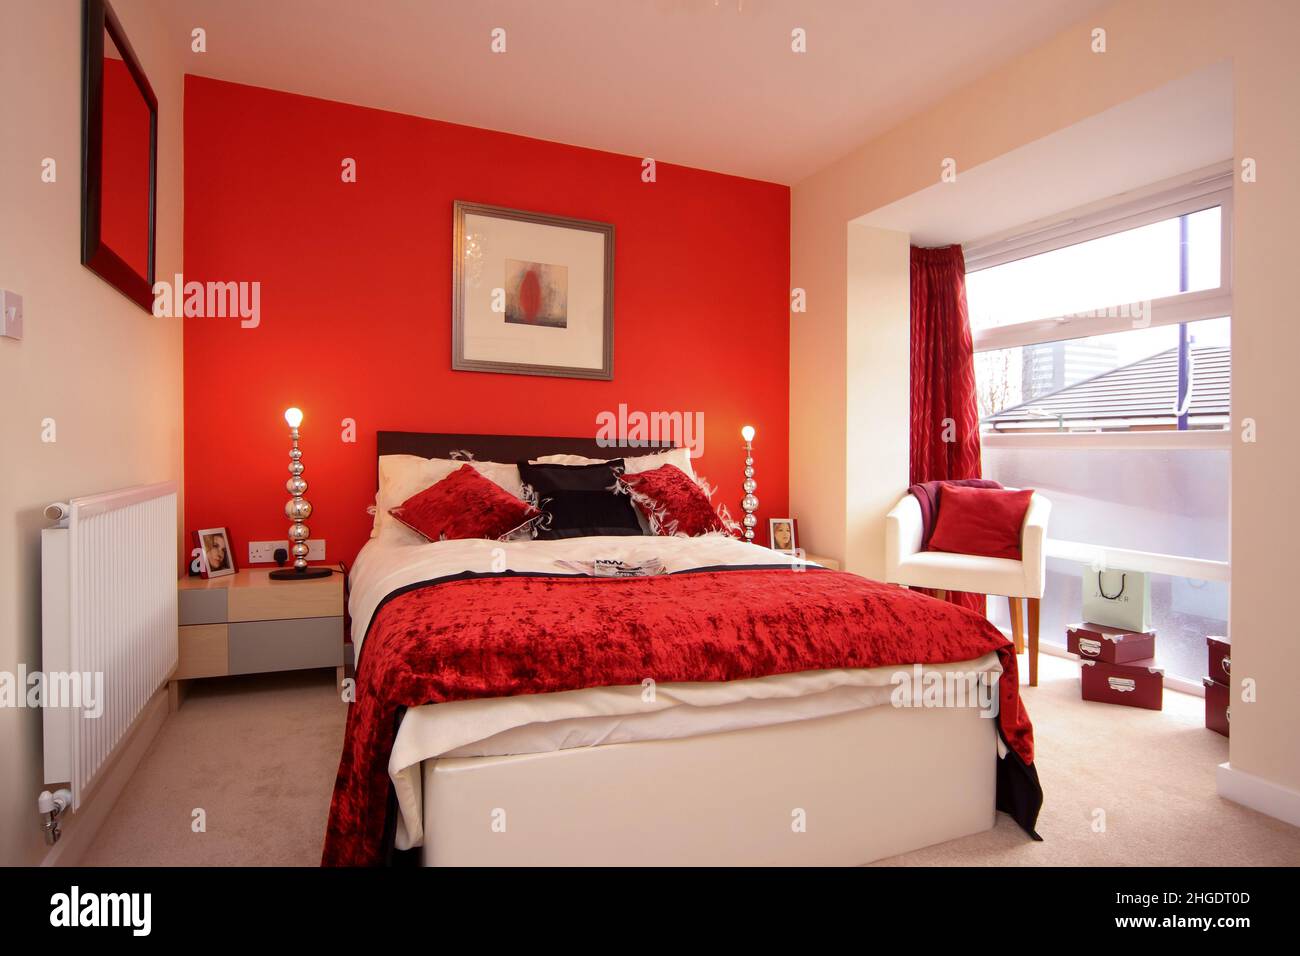 Chambre, lit King Size double, coloris rouge vif, couvre-lits et coussins en velours, lampes de chevet, mur rouge Banque D'Images